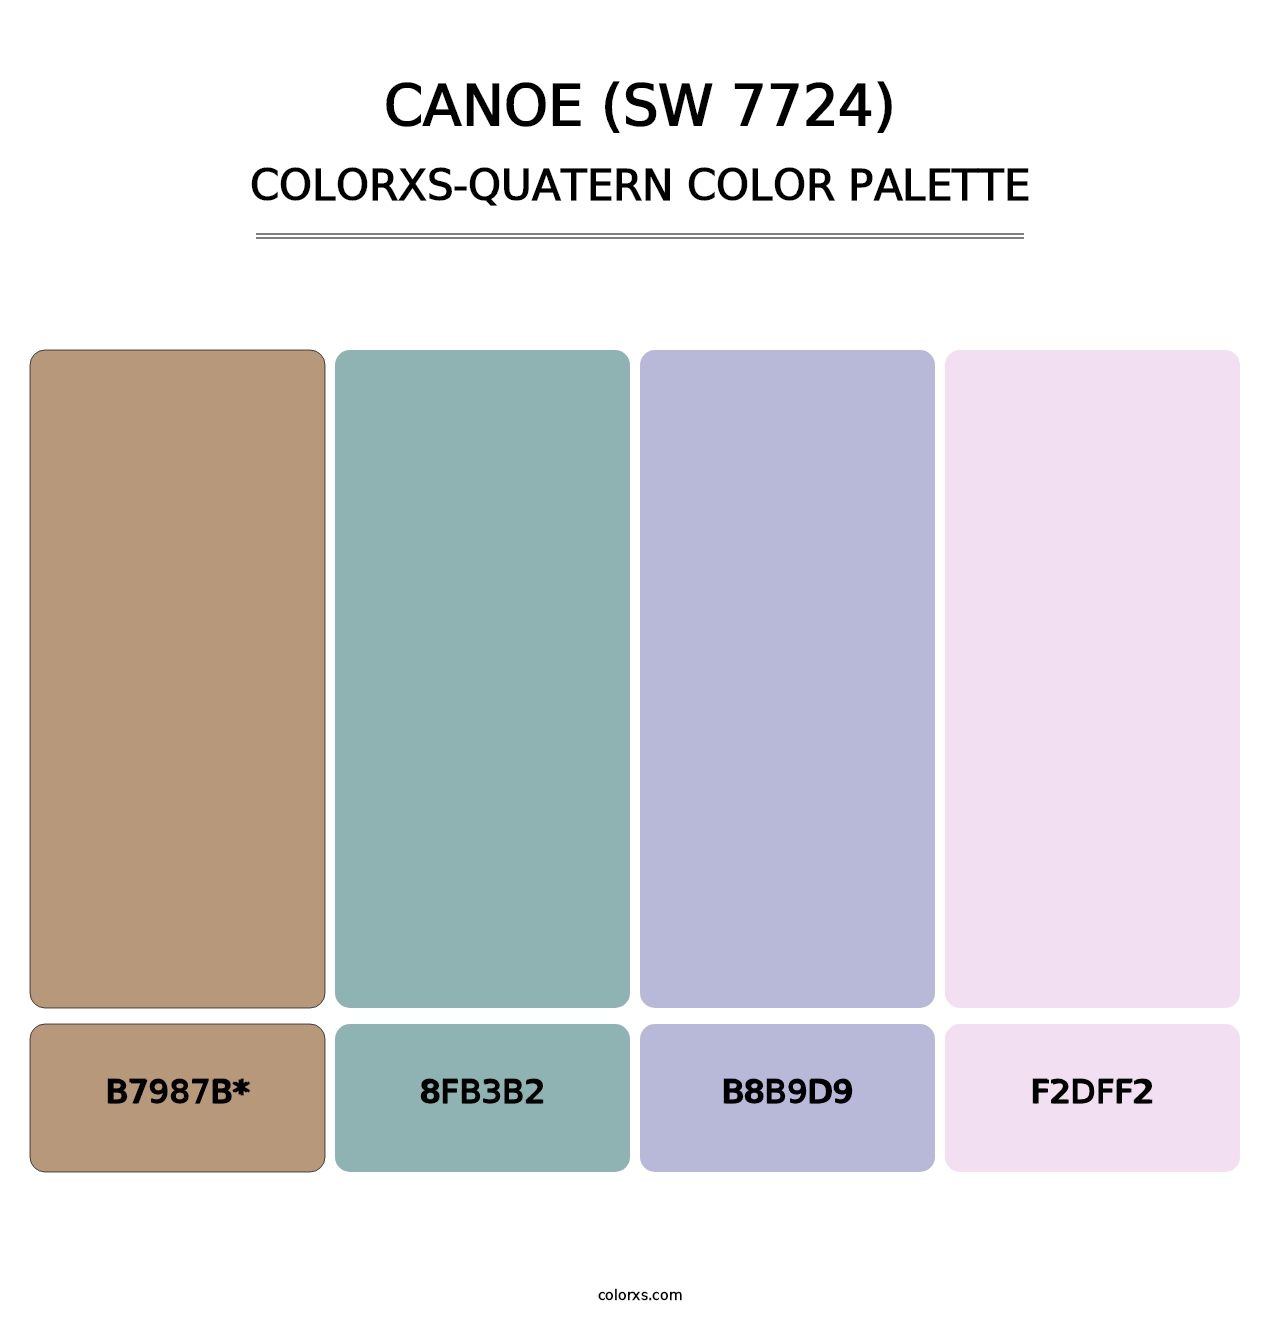 Canoe (SW 7724) - Colorxs Quatern Palette